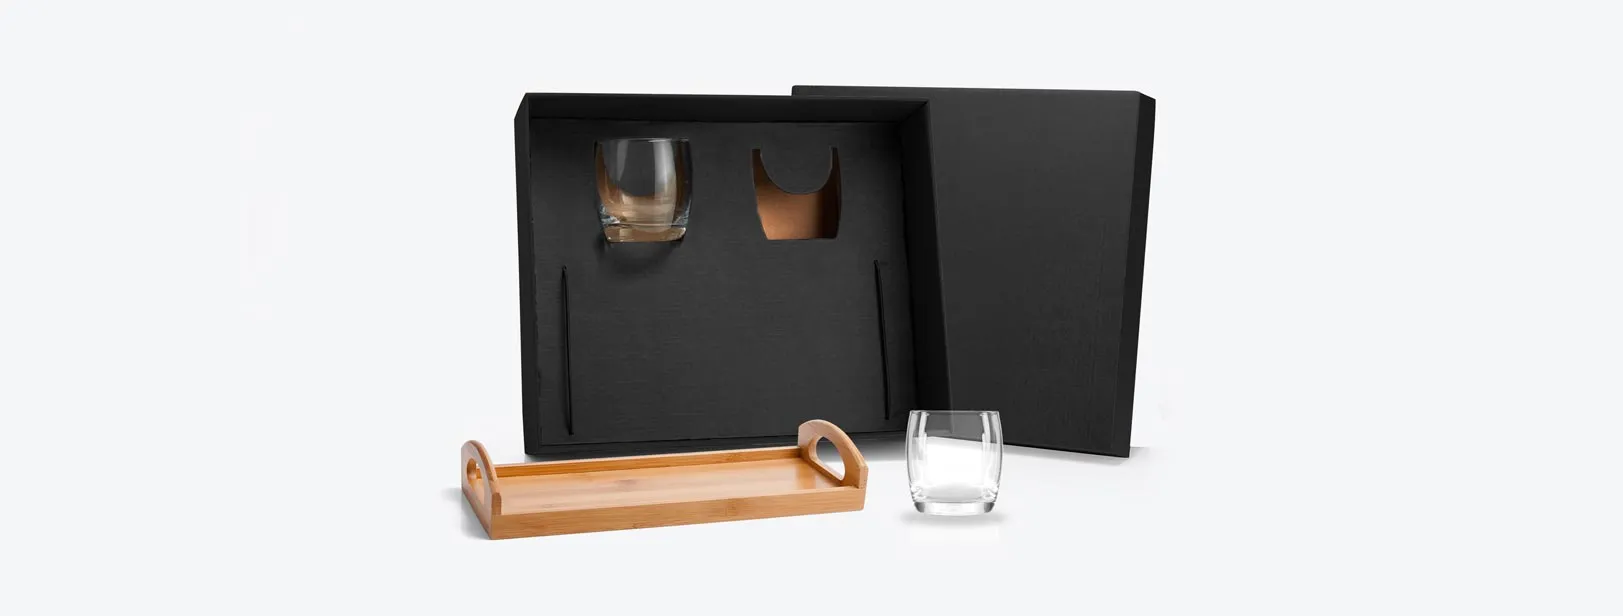 Kit whisky. Conta com dois copos em vidro e bandeja em bambu. Estão perfeitamente acomodados em uma caixa para presentear.